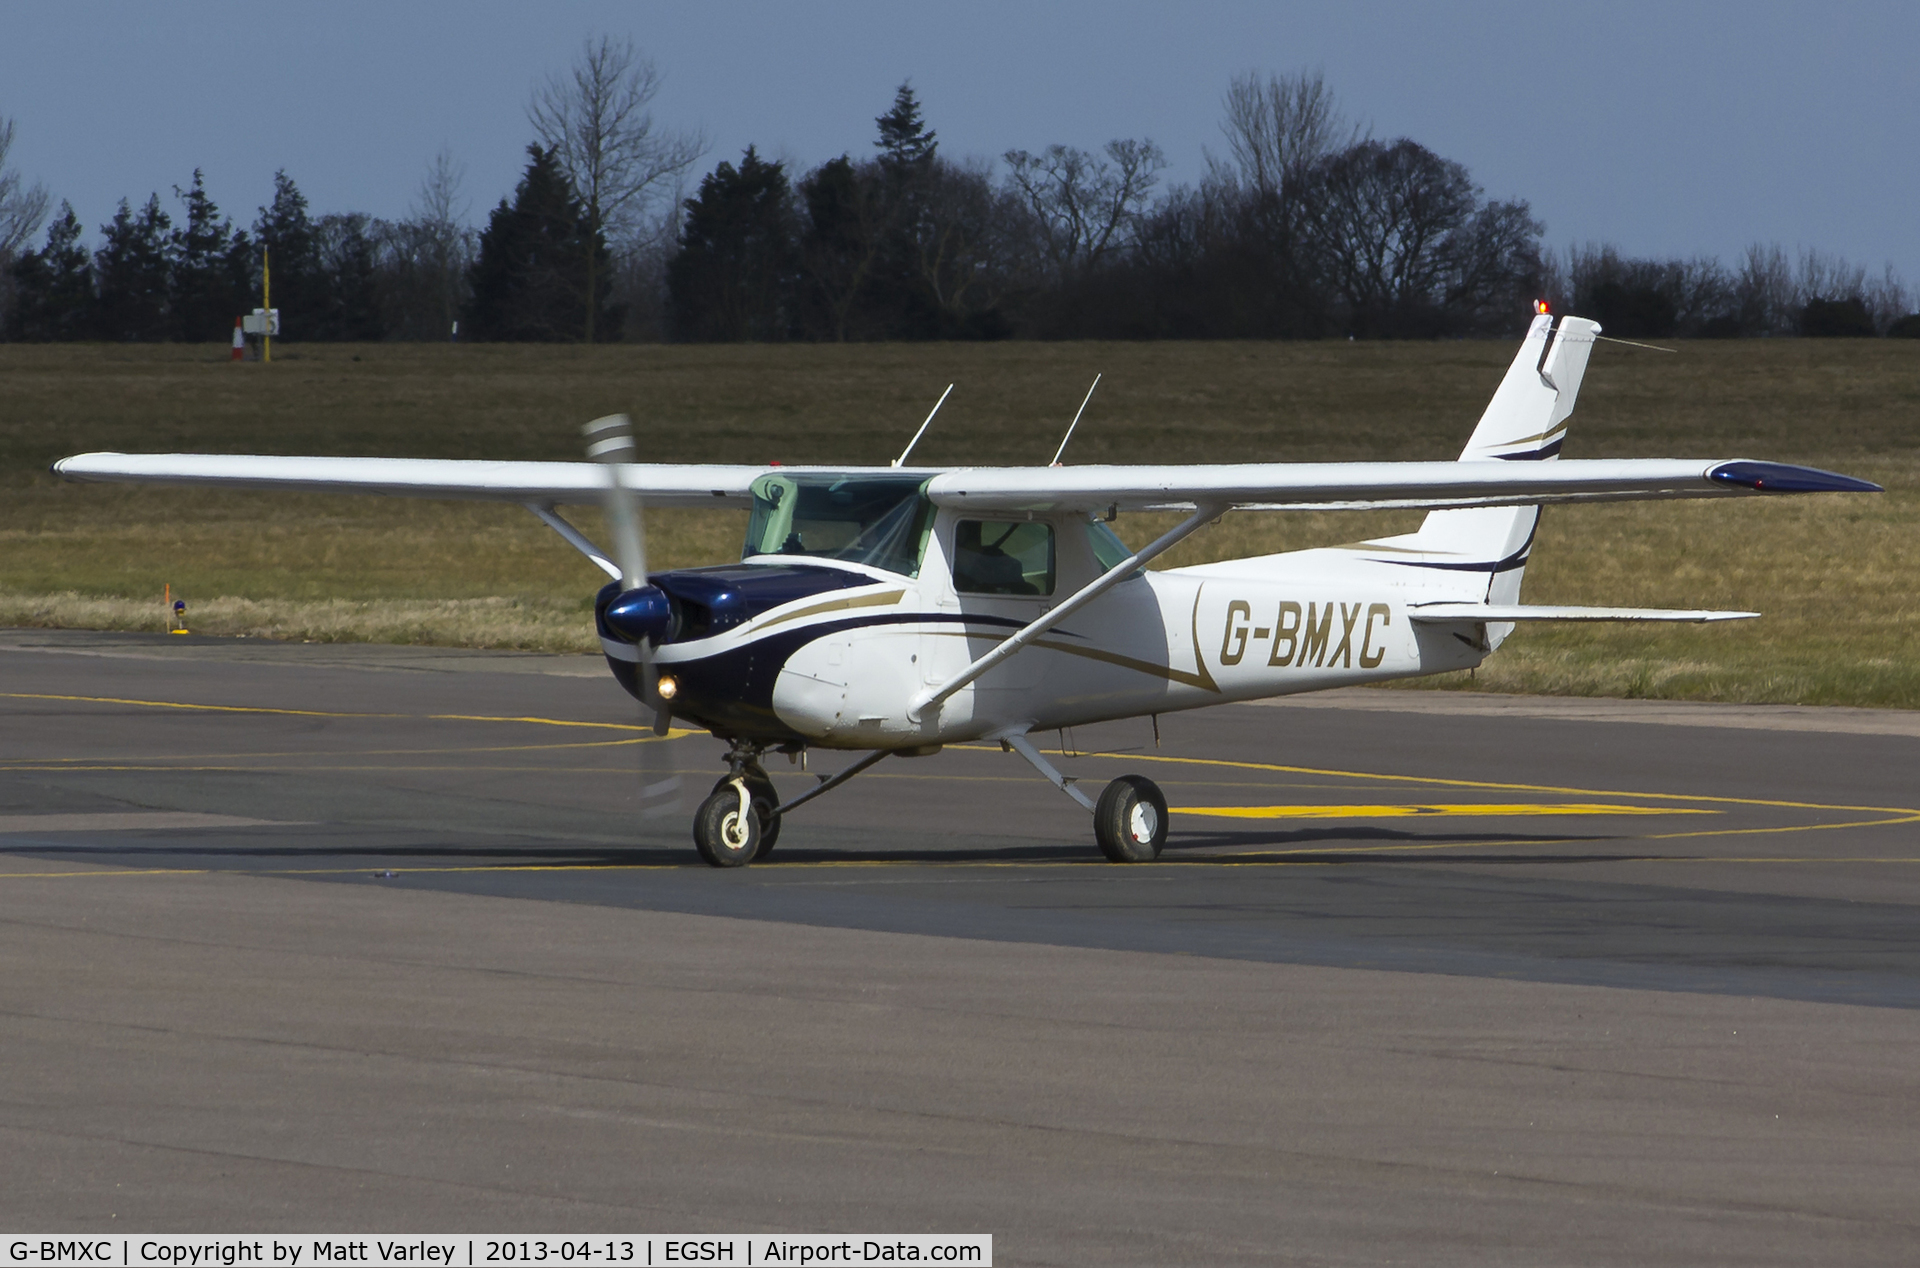 G-BMXC, 1977 Cessna 152 C/N 152-80416, Arriving at SaxonAir.